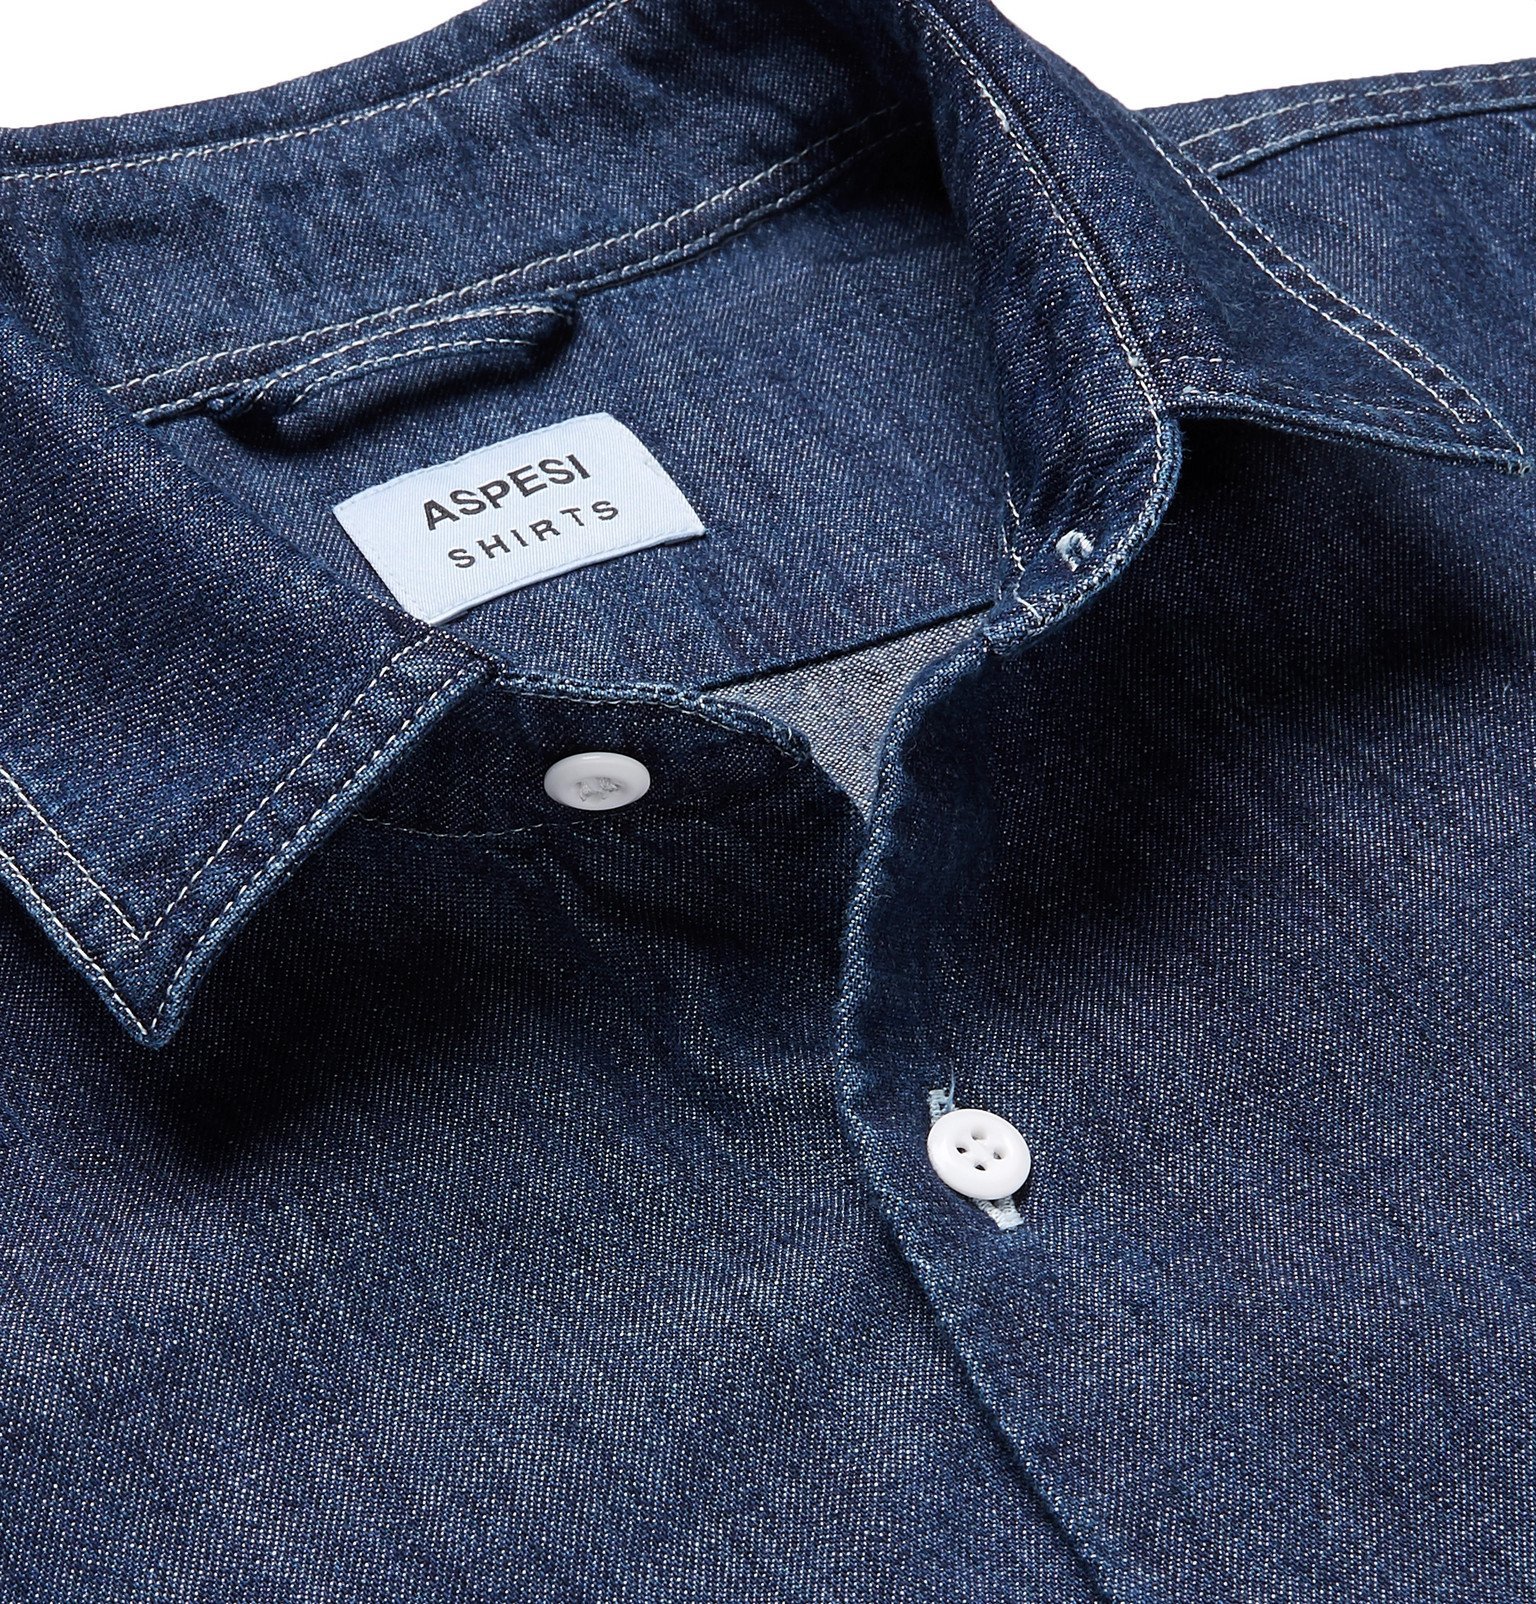 店内全品ﾎﾟｲﾝﾄ2倍!! ASPESI アスペジ シャツ トップス メンズ Denim shirts Blue - 通販 -  www.certificazionece.it